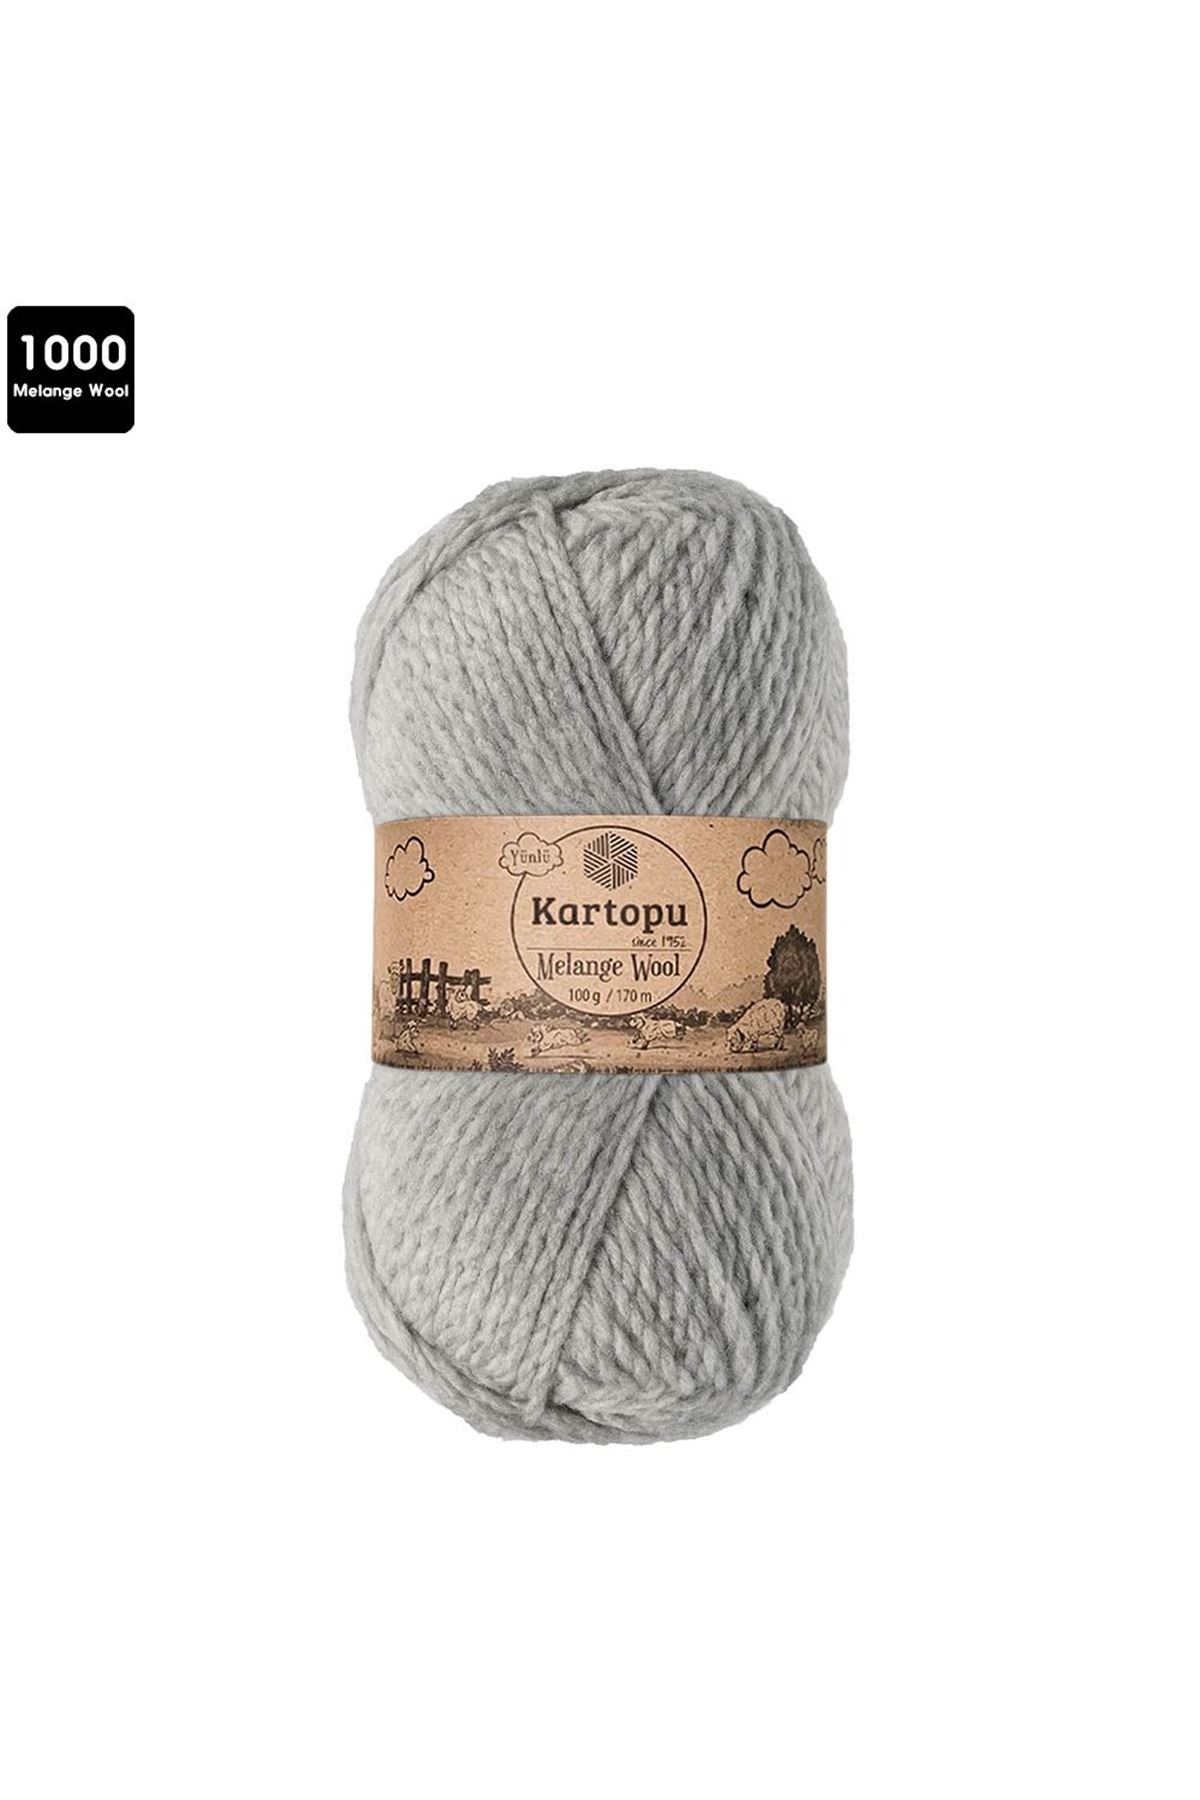 Kartopu Melange Wool Renk No:1000